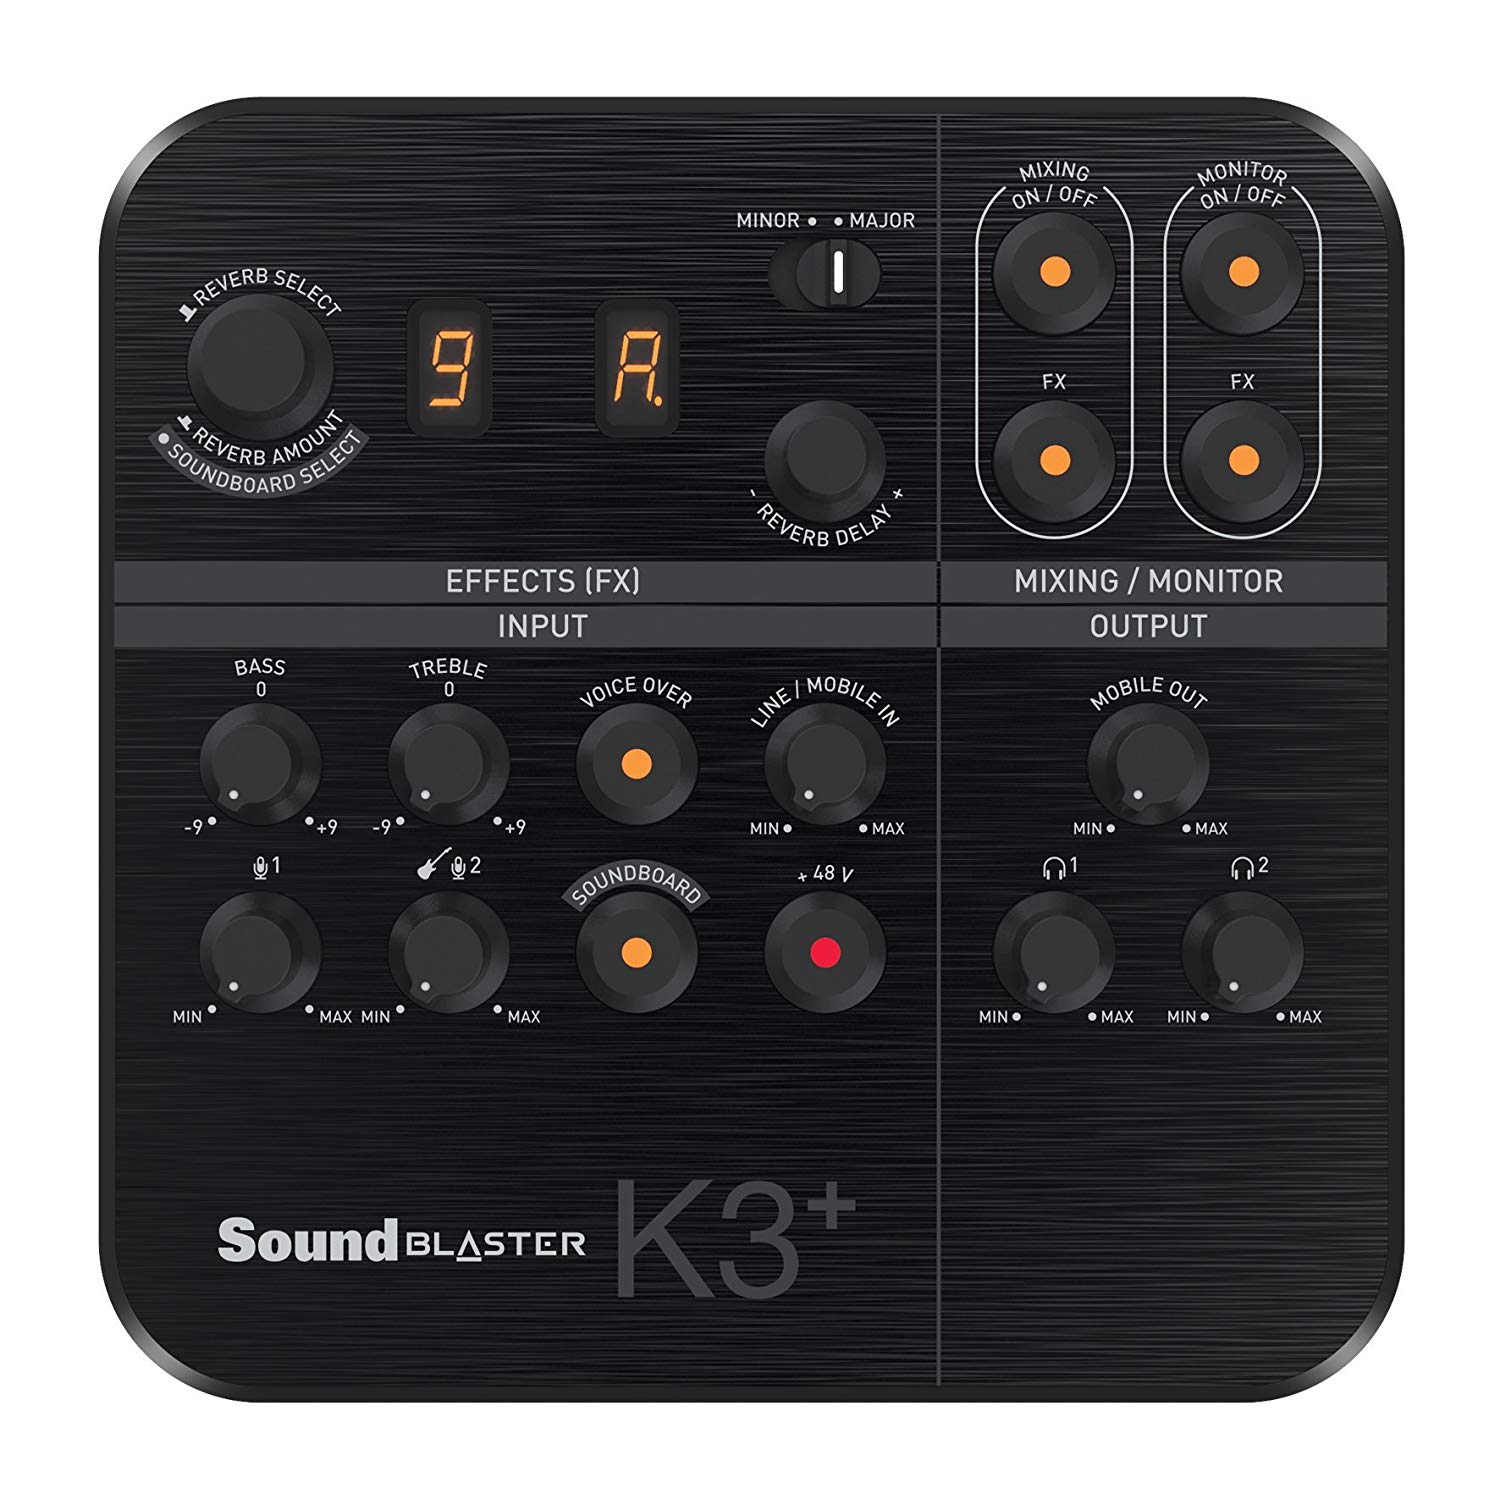 Creative Sound Blaster K3 Mezclador digital AMP DAC de 2 canales alimentado por USB Entradas XLR de efectos digitales con alimentacion Phantom TRS Entrada de linea Z.